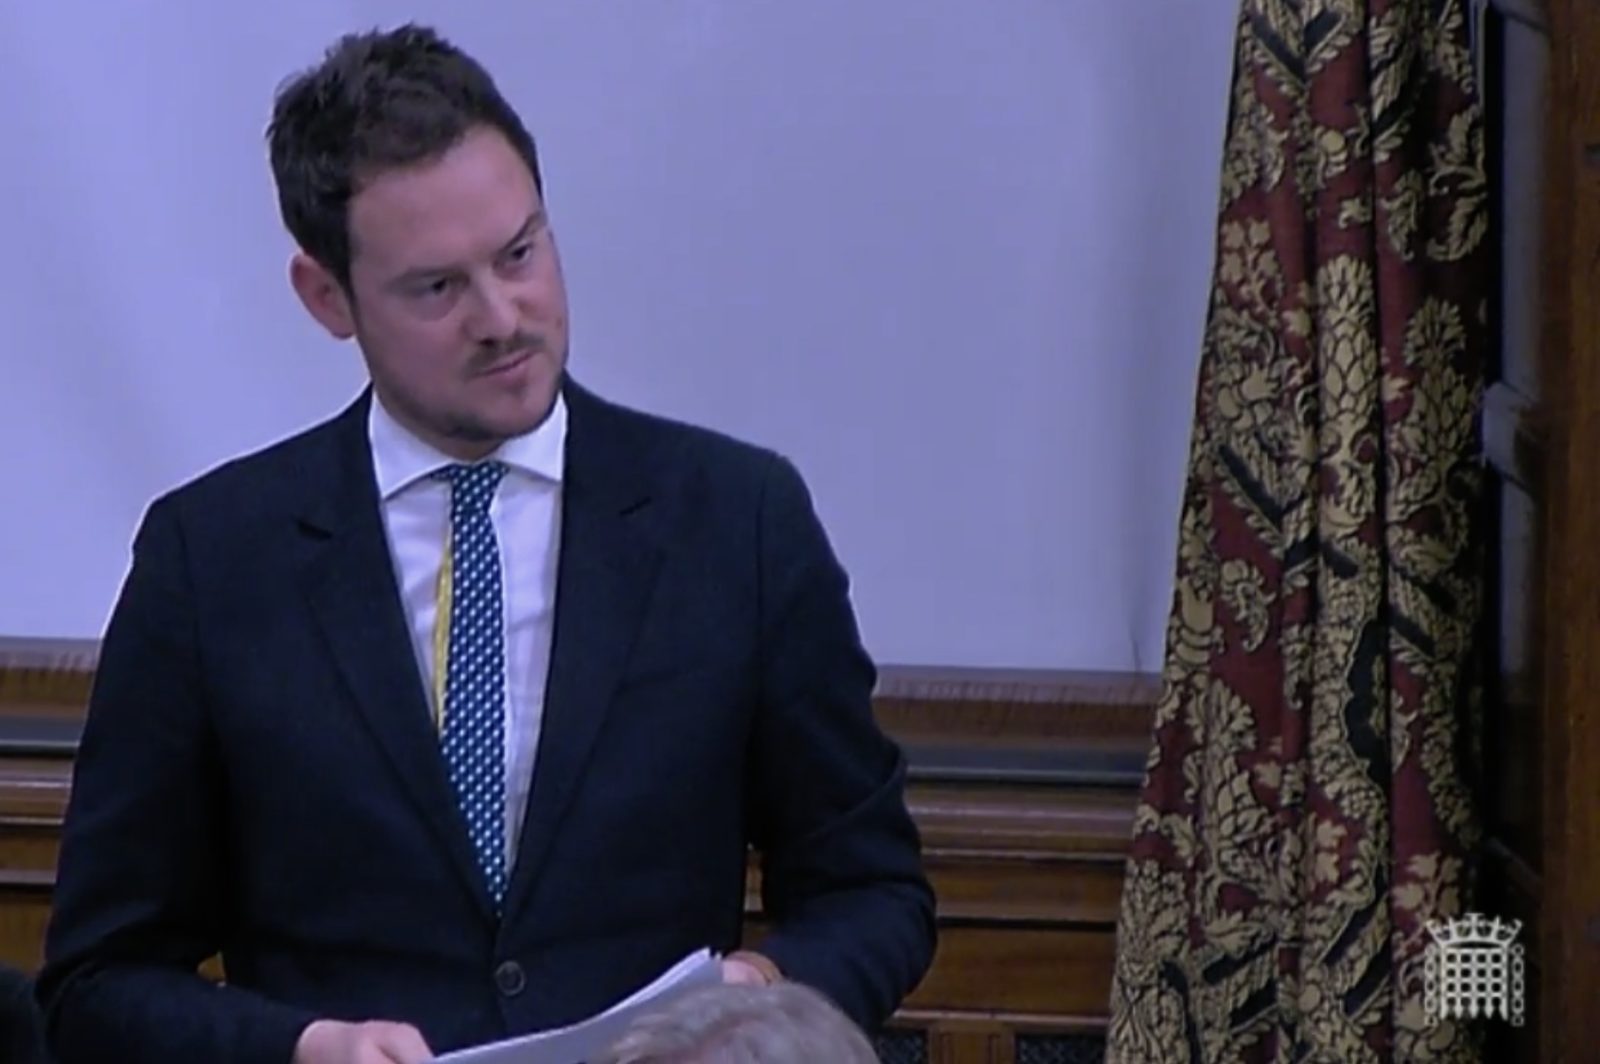 Stephen Morgan MP speaking in the debate